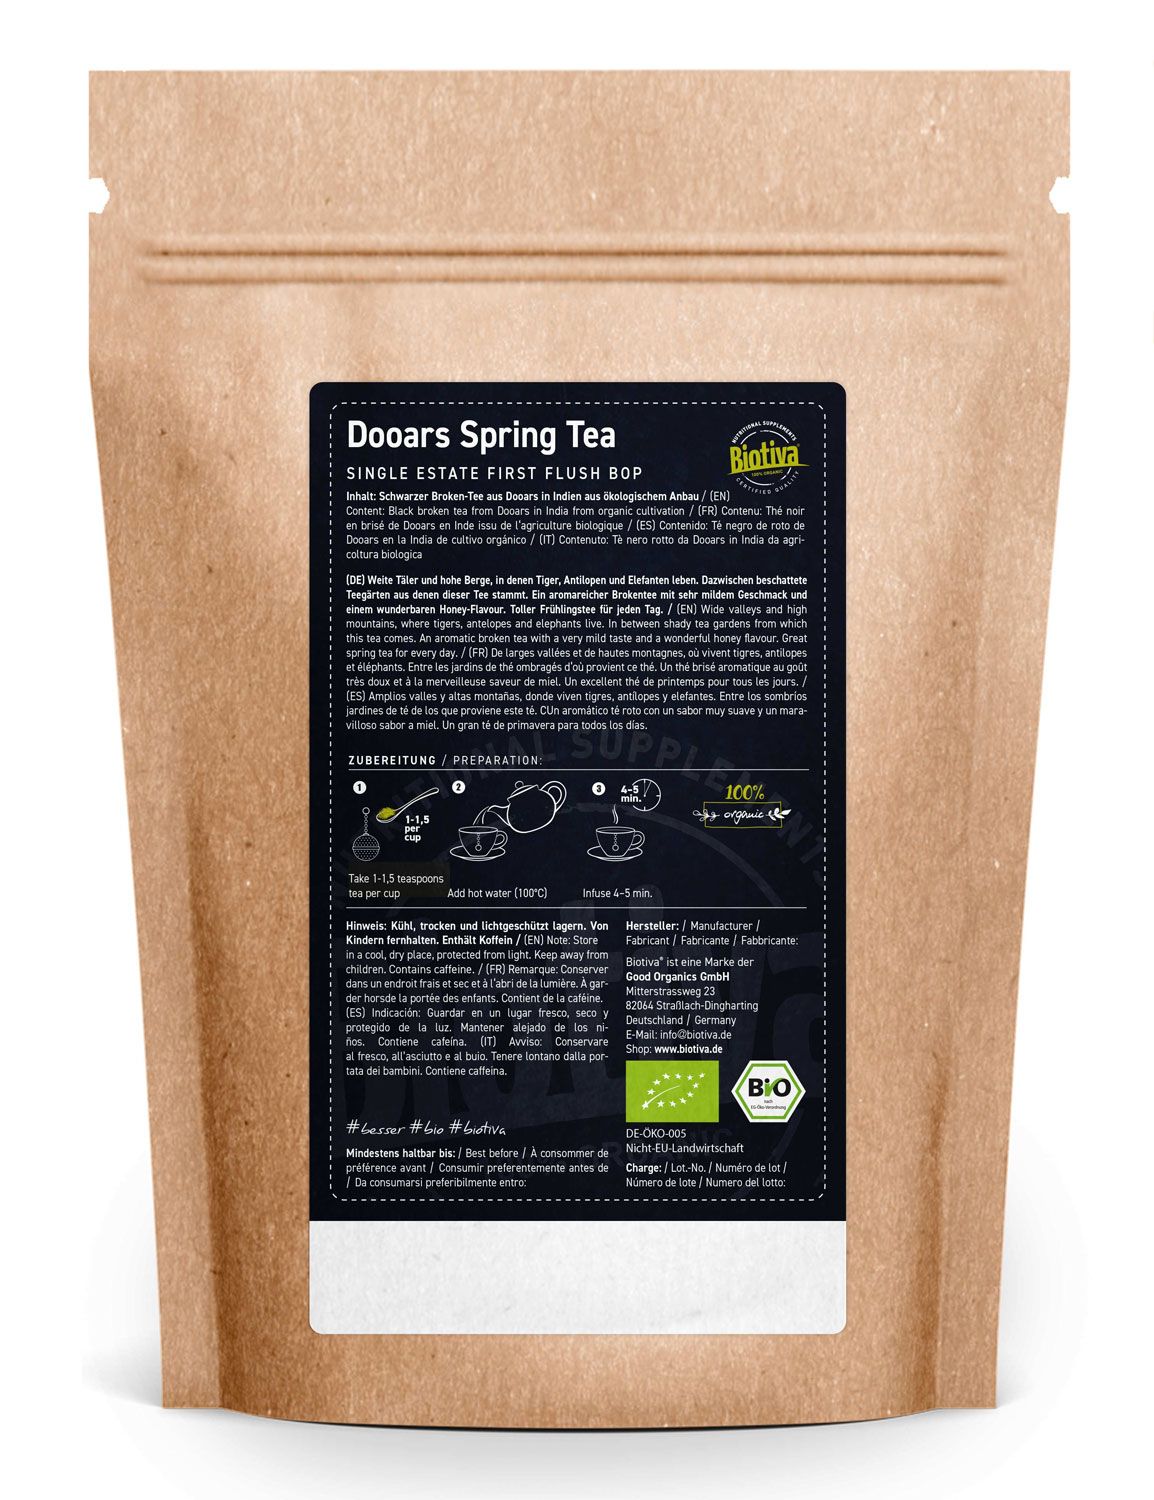 Biotiva Dooars Spring Tea Schwarztee Bio